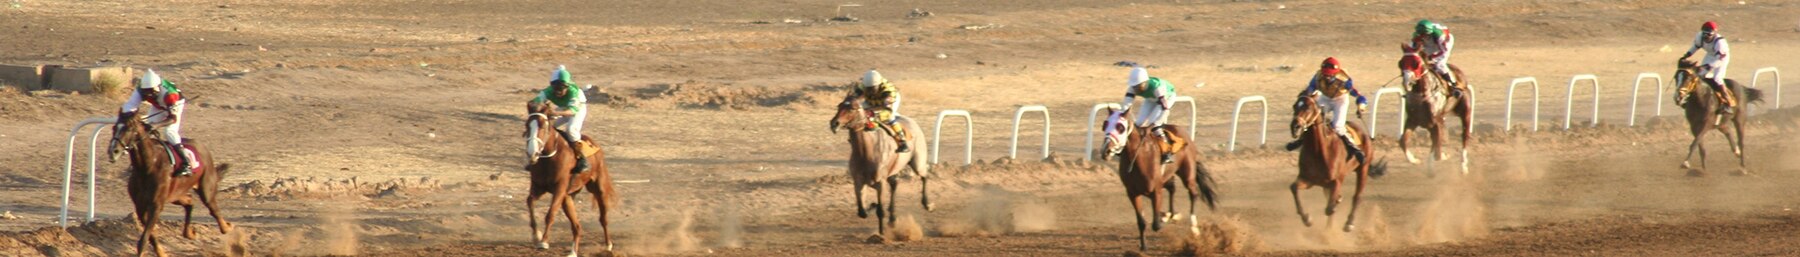 Khartoum banner Horse racing.jpg